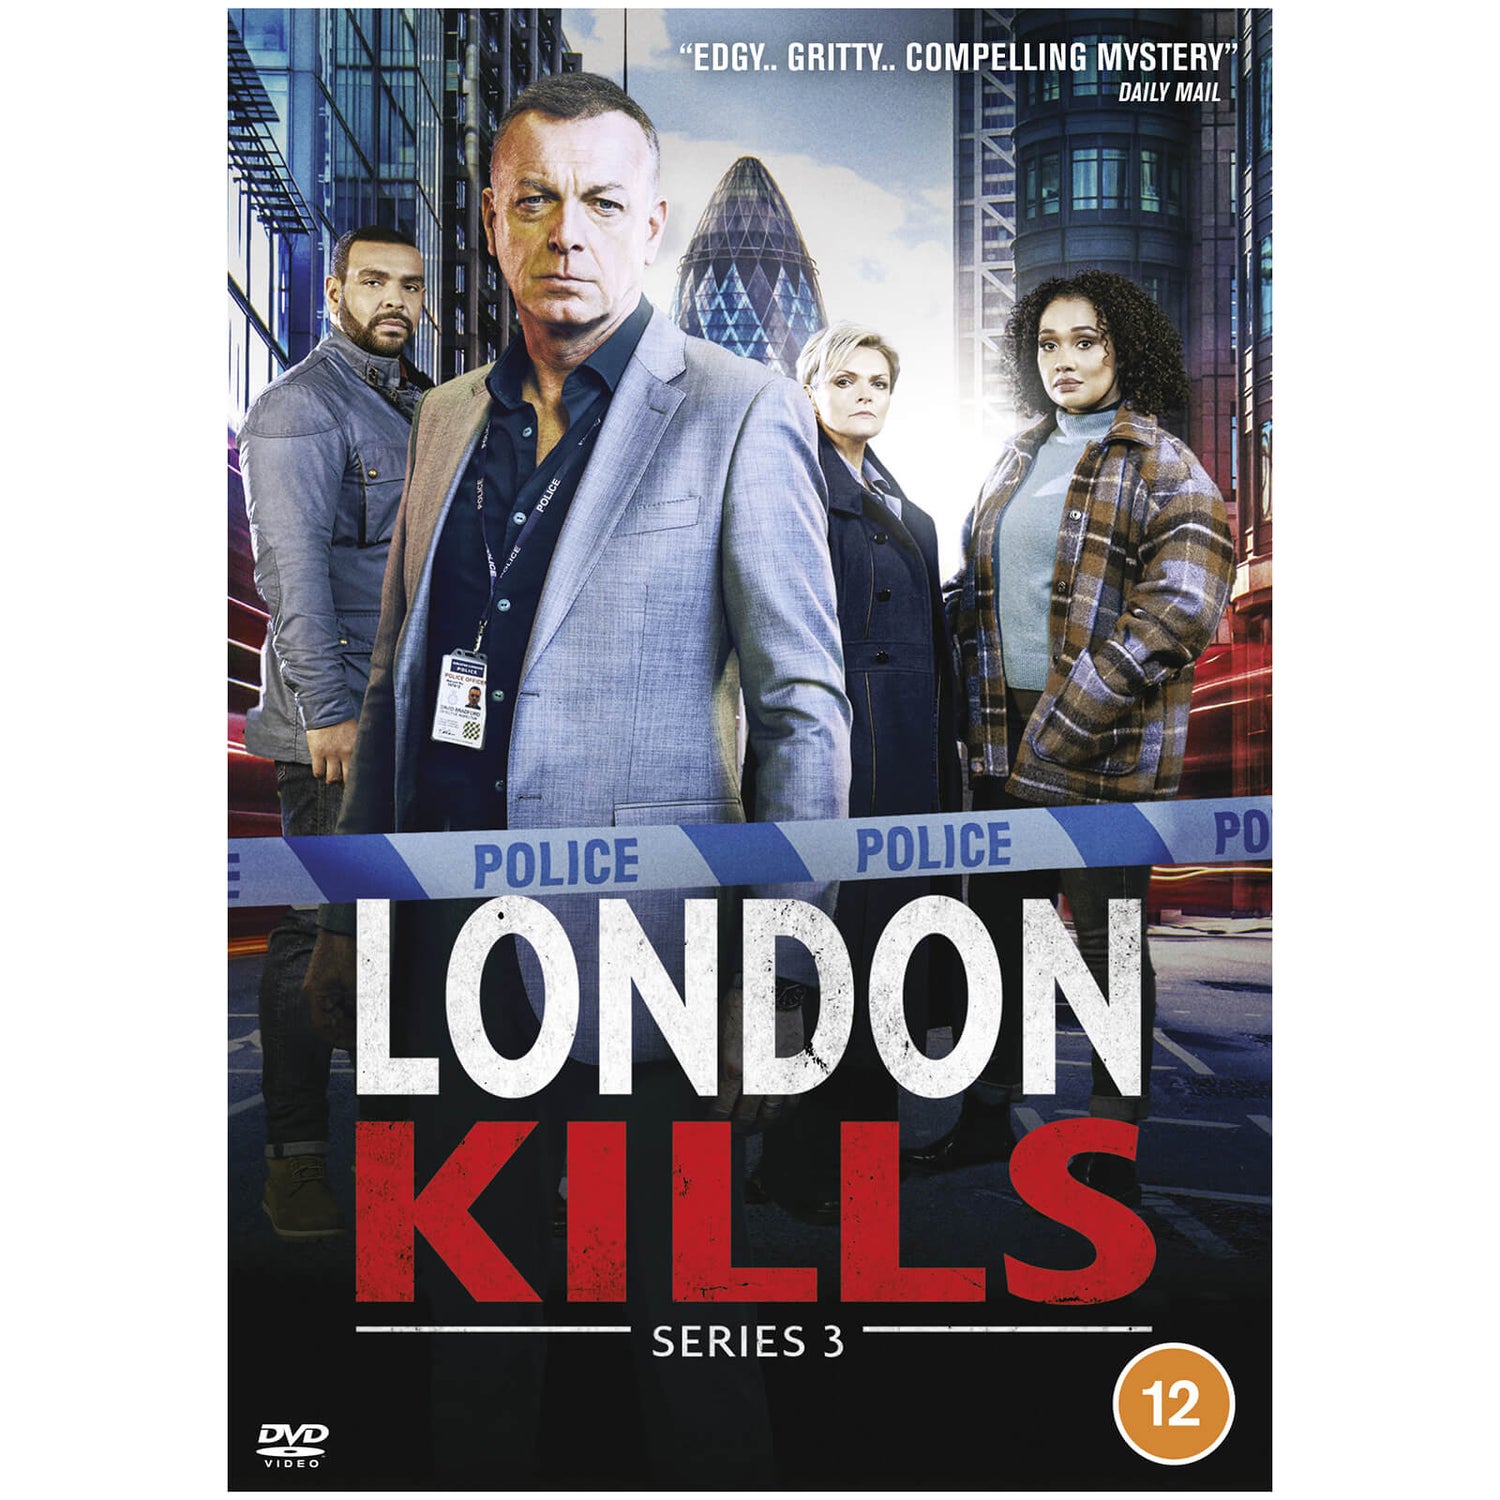 London Kills: Series 3